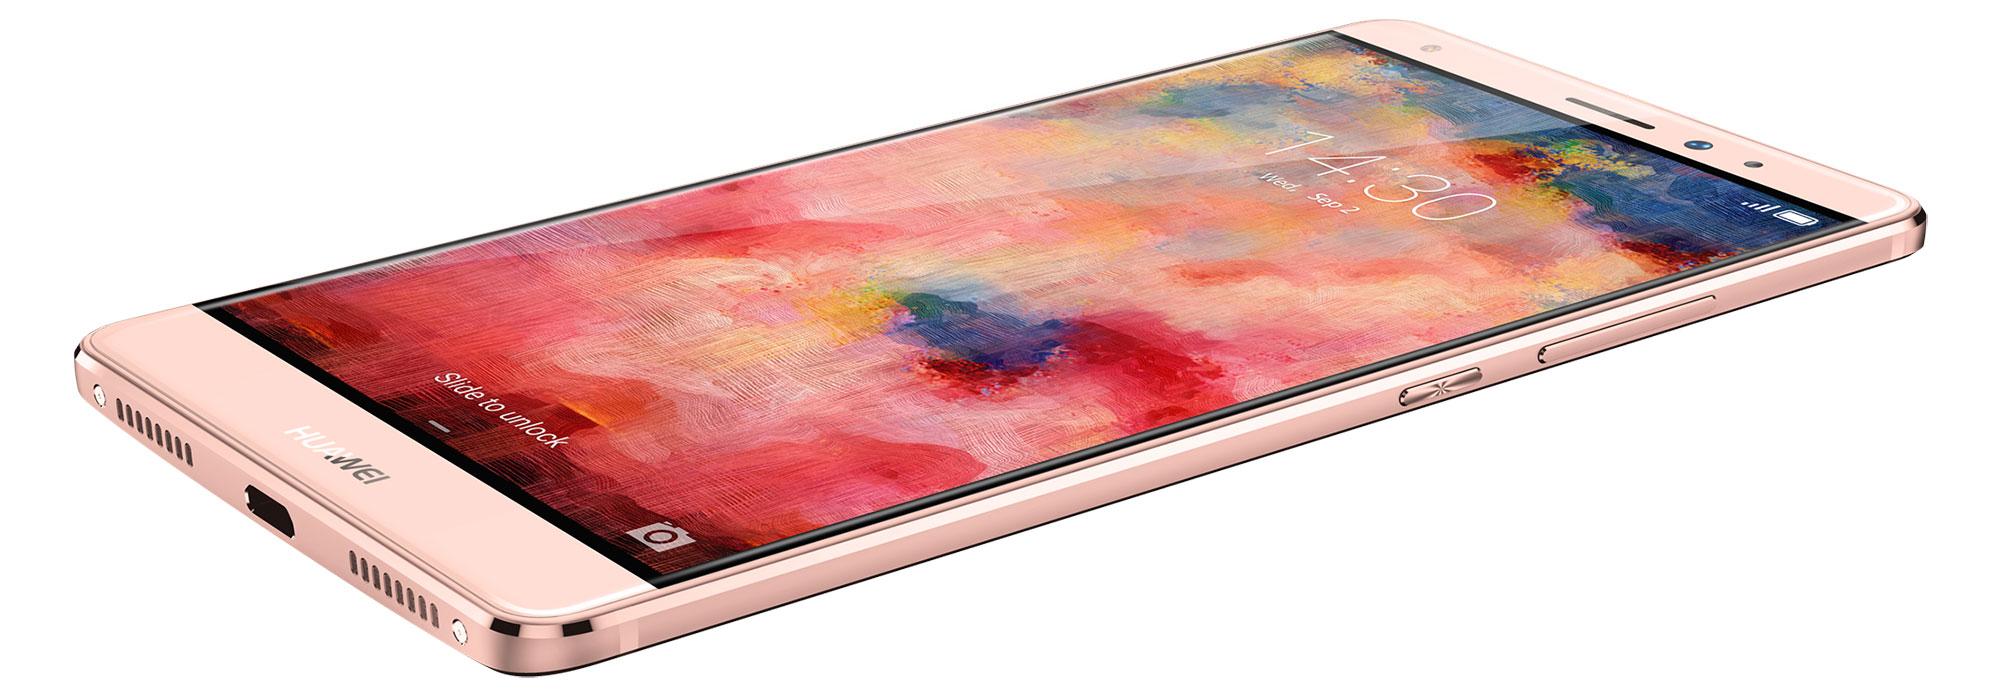 Huawei Mate S en color rosa